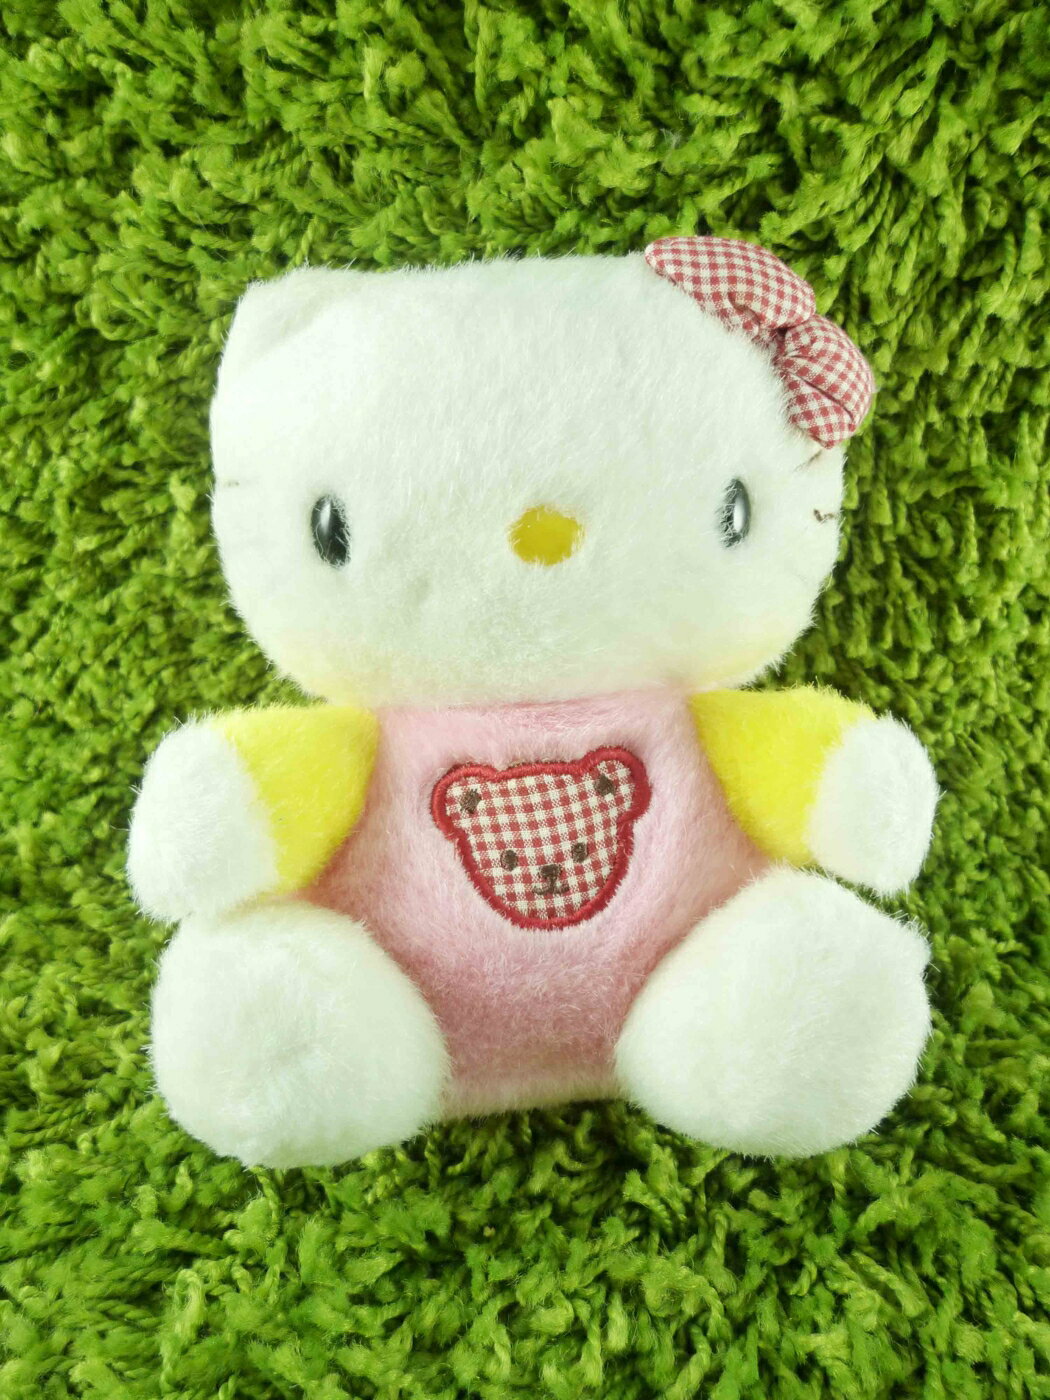 【震撼精品百貨】Hello Kitty 凱蒂貓 KITTY絨毛娃娃-粉黃造型 震撼日式精品百貨